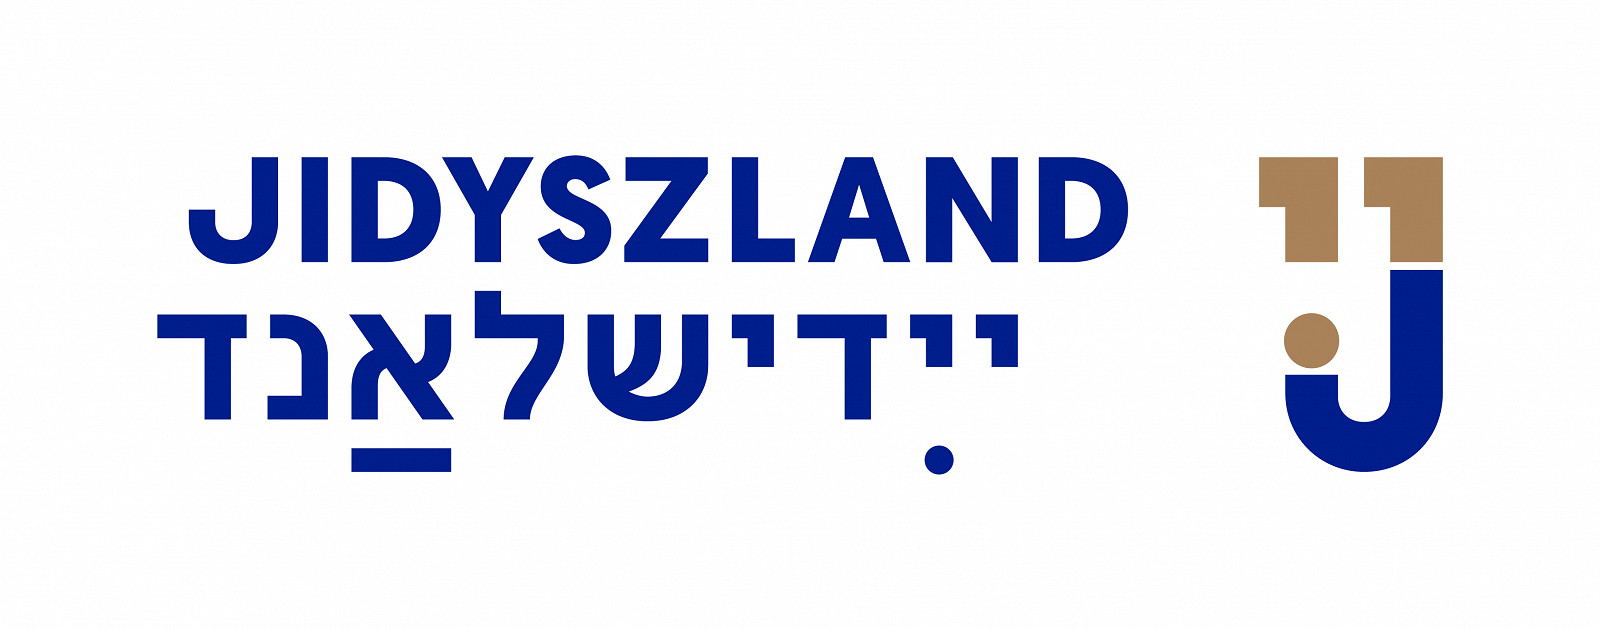 jidyszland-znak-RGB_poziom-BLUEGOLD_logo.jpg [316.58 KB]